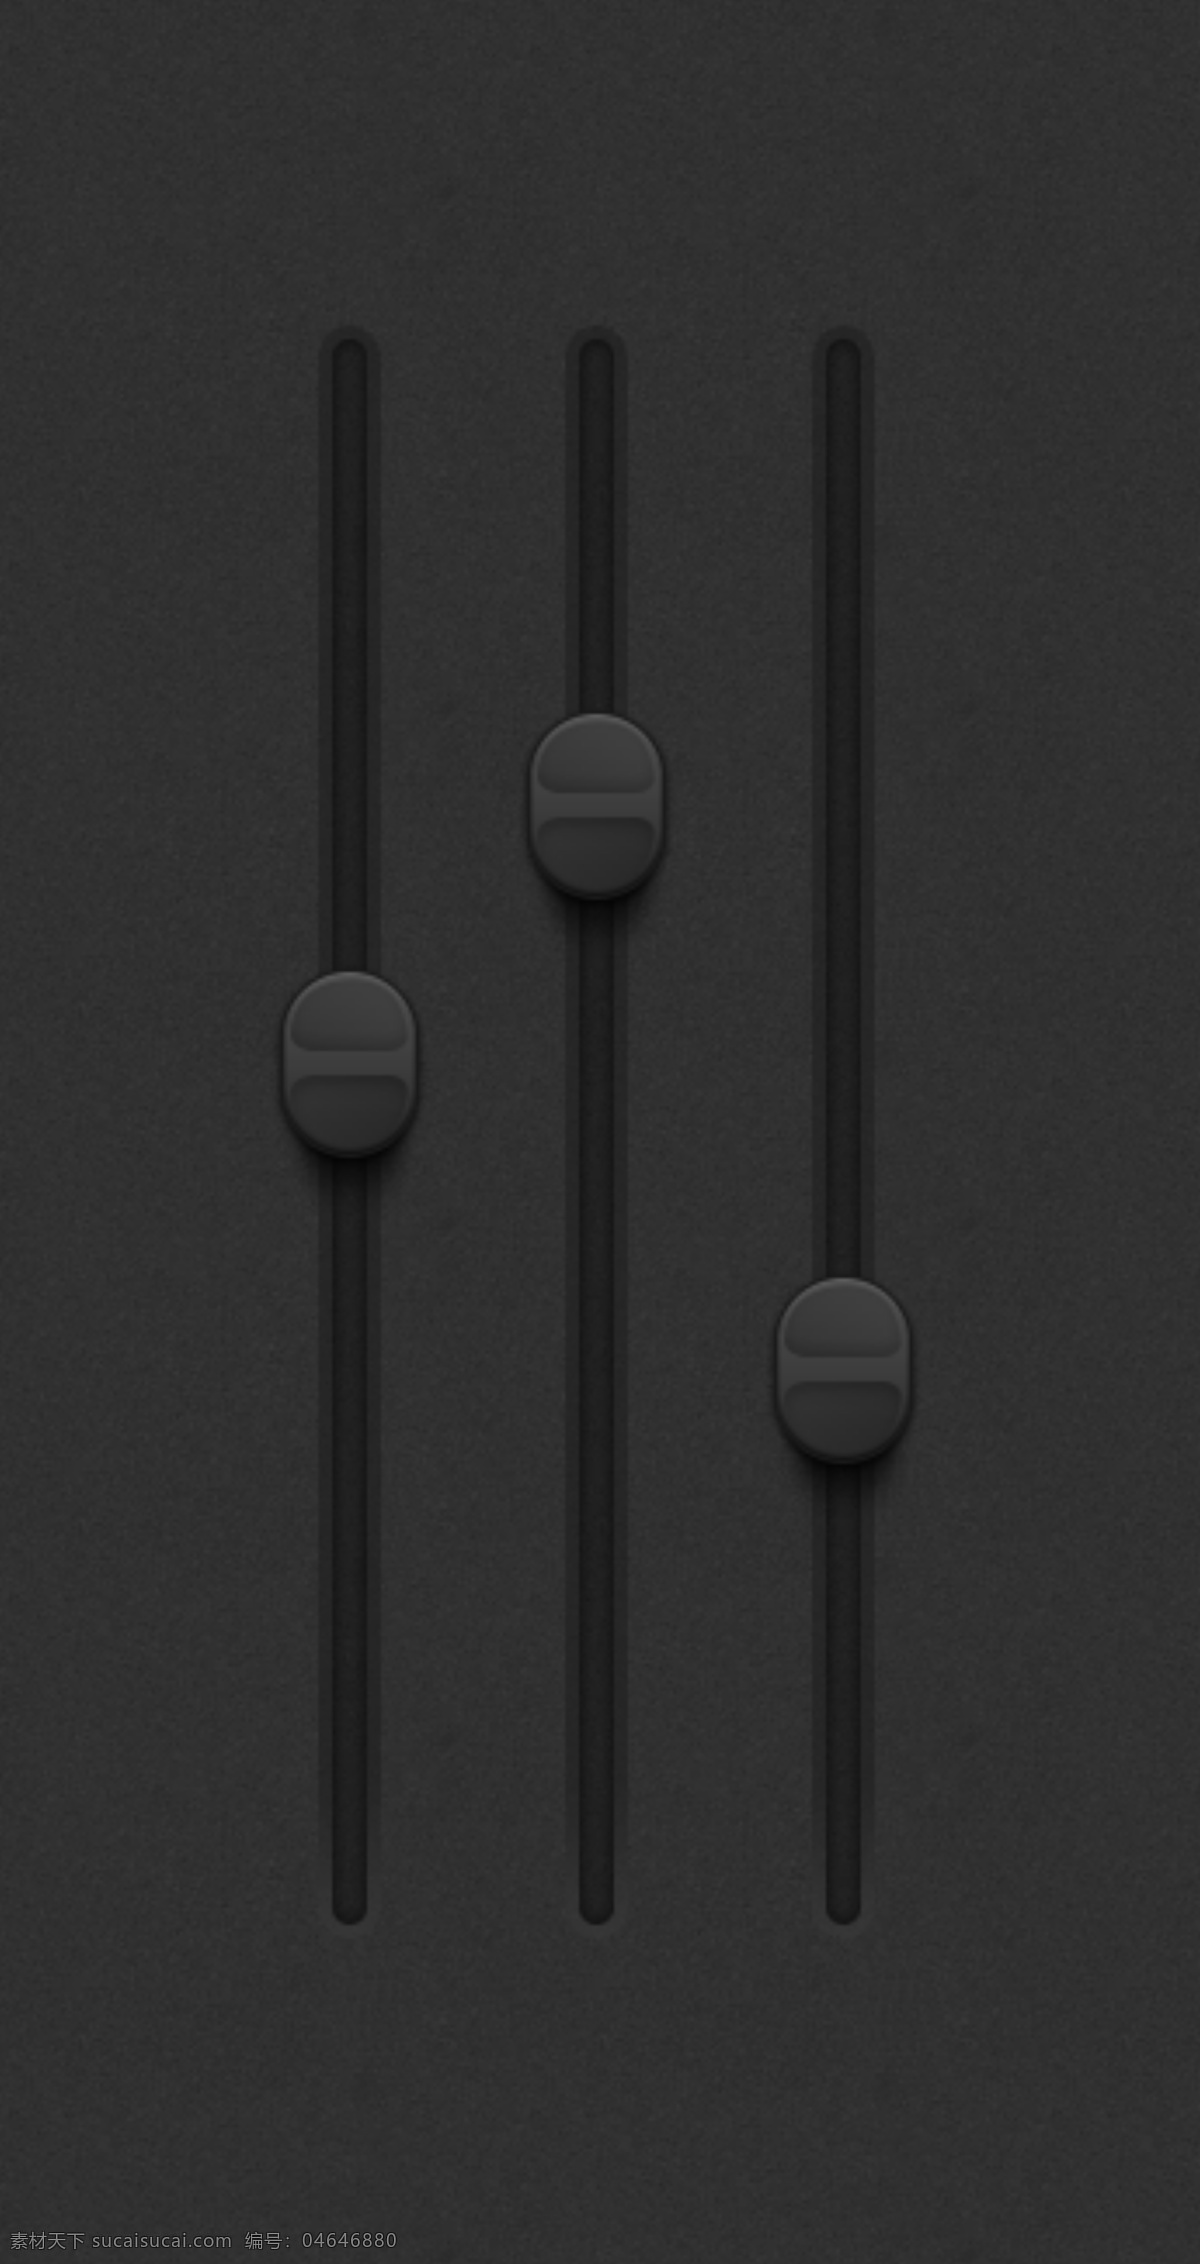 ui滑块设置 暗 帅气 web 创意 高分辨率 黑暗 接口 免费 清洁 用户界面 时尚的 现代的 独特的 原始的 新的 hd 元素 ui元素 详细的 滑块 黑暗的滑块 ui滑块 集 矢量图